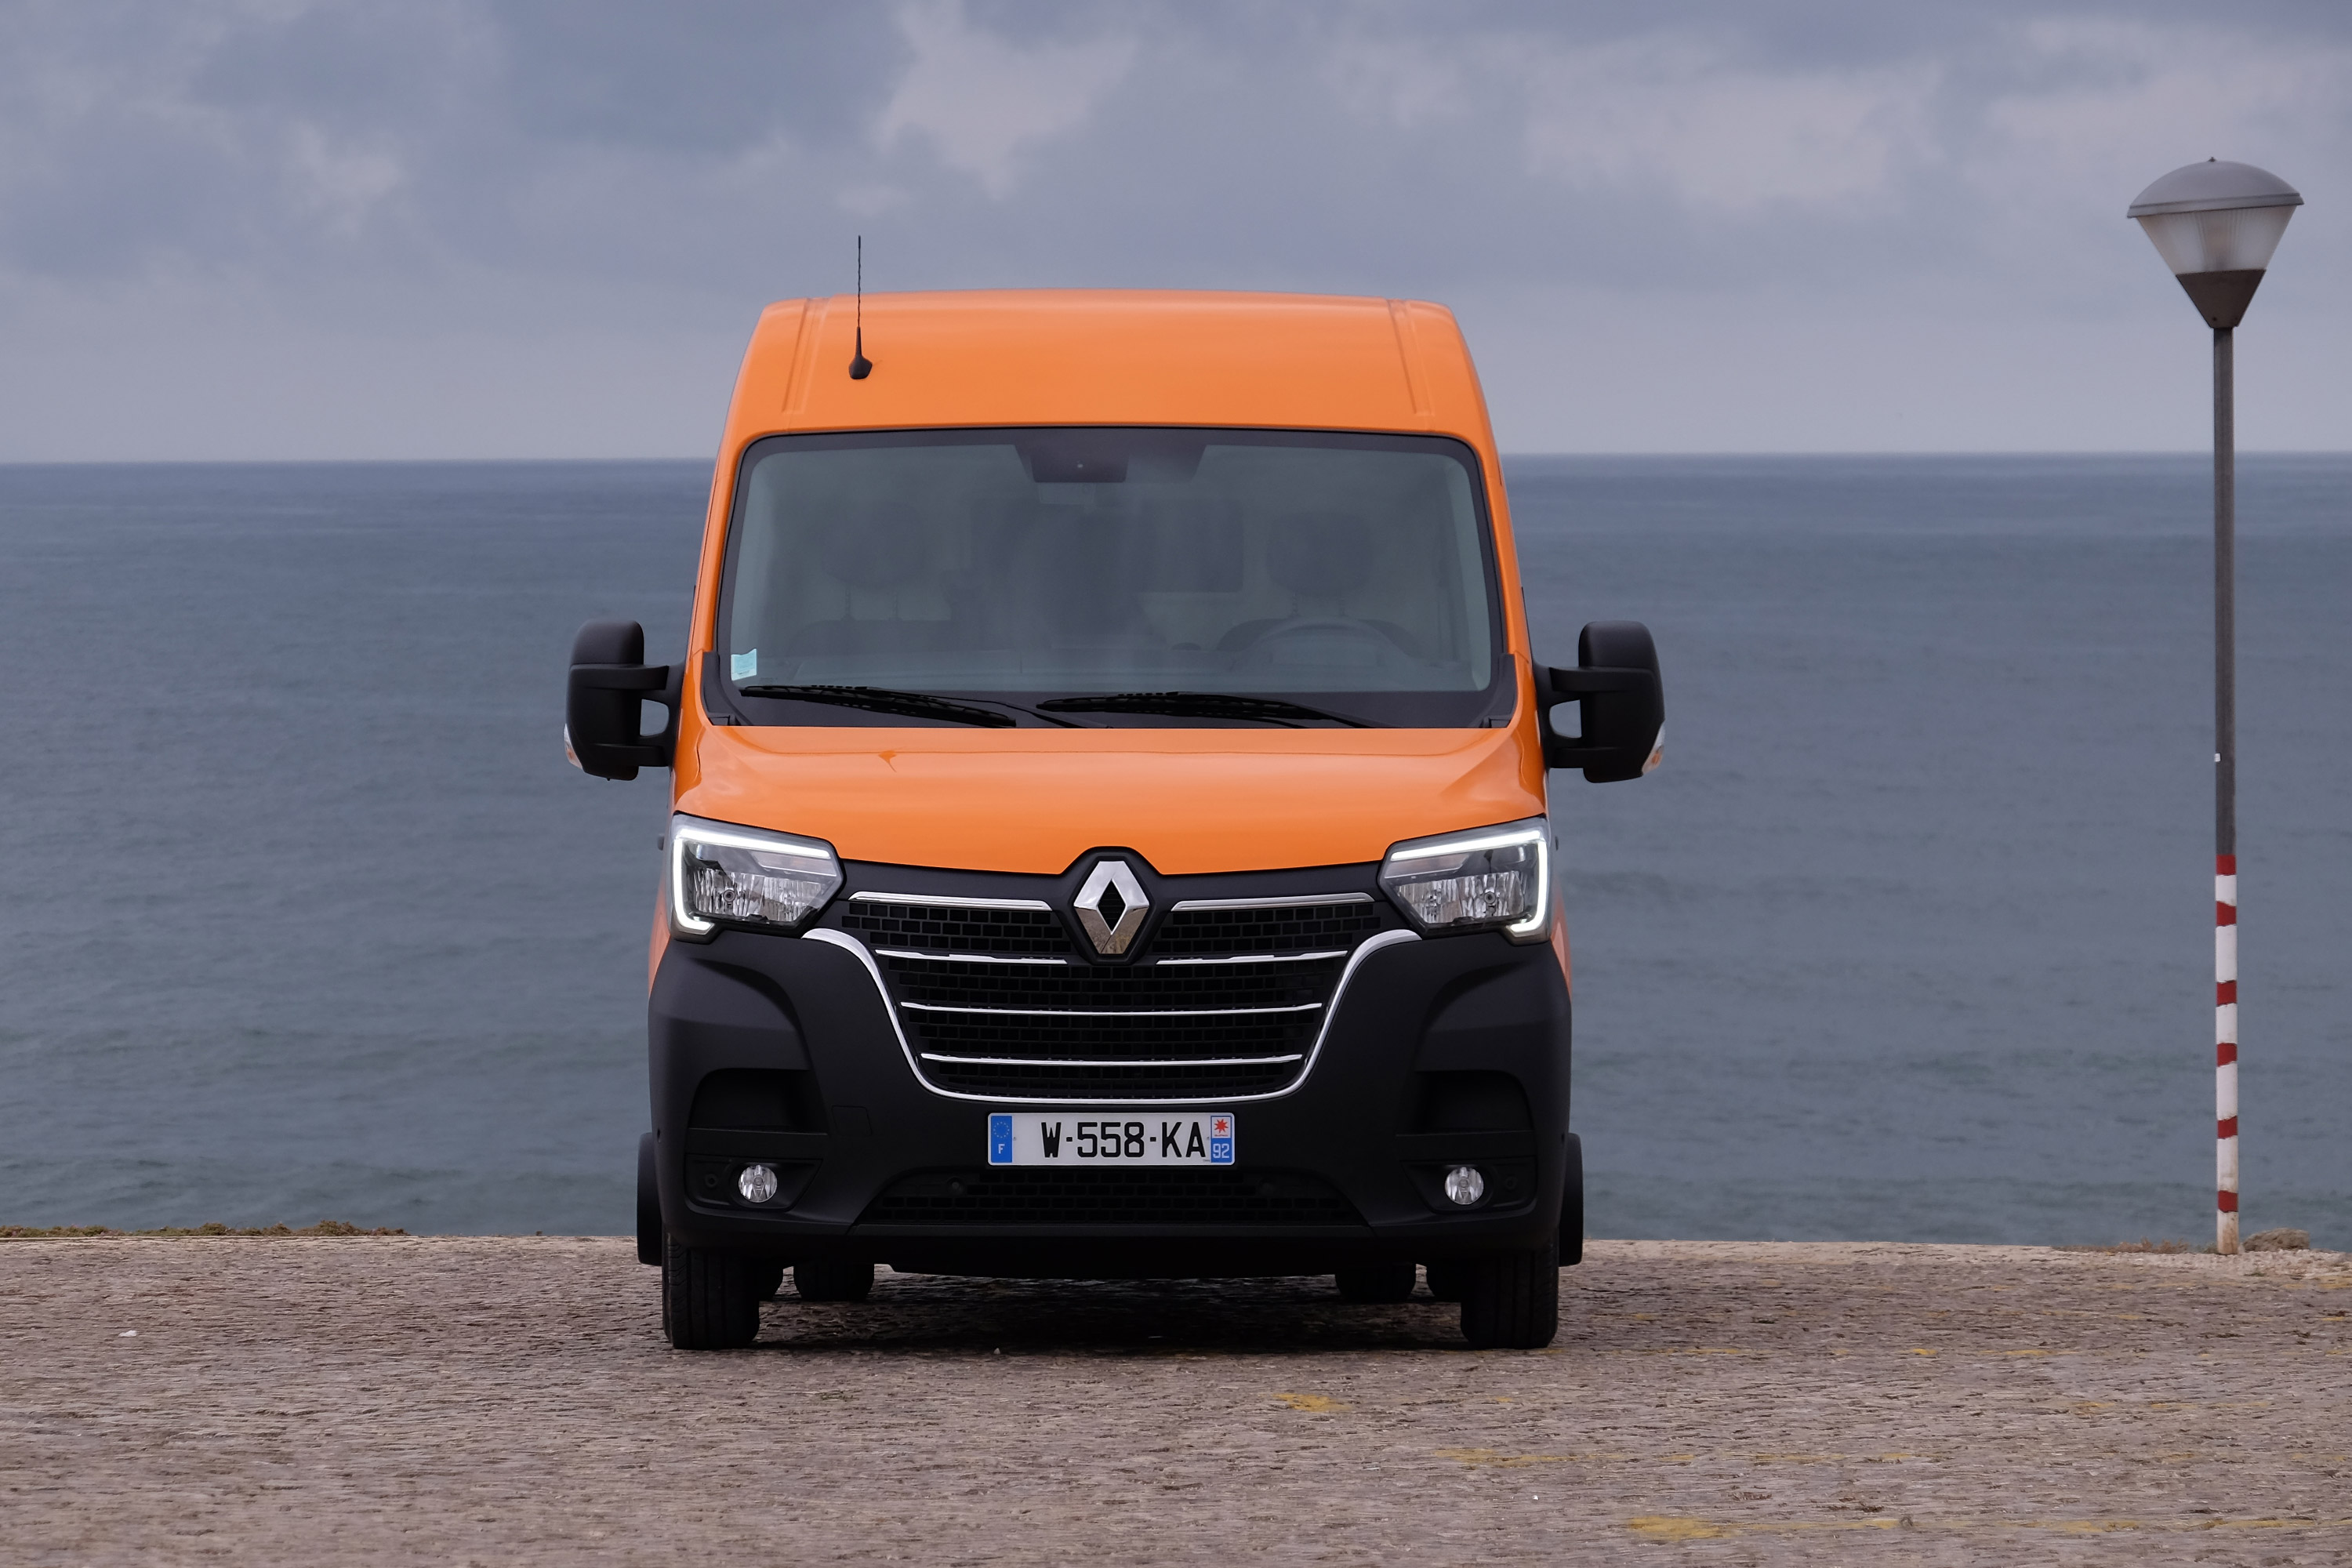 Frissültek a Renault kis-haszonjárművei 31